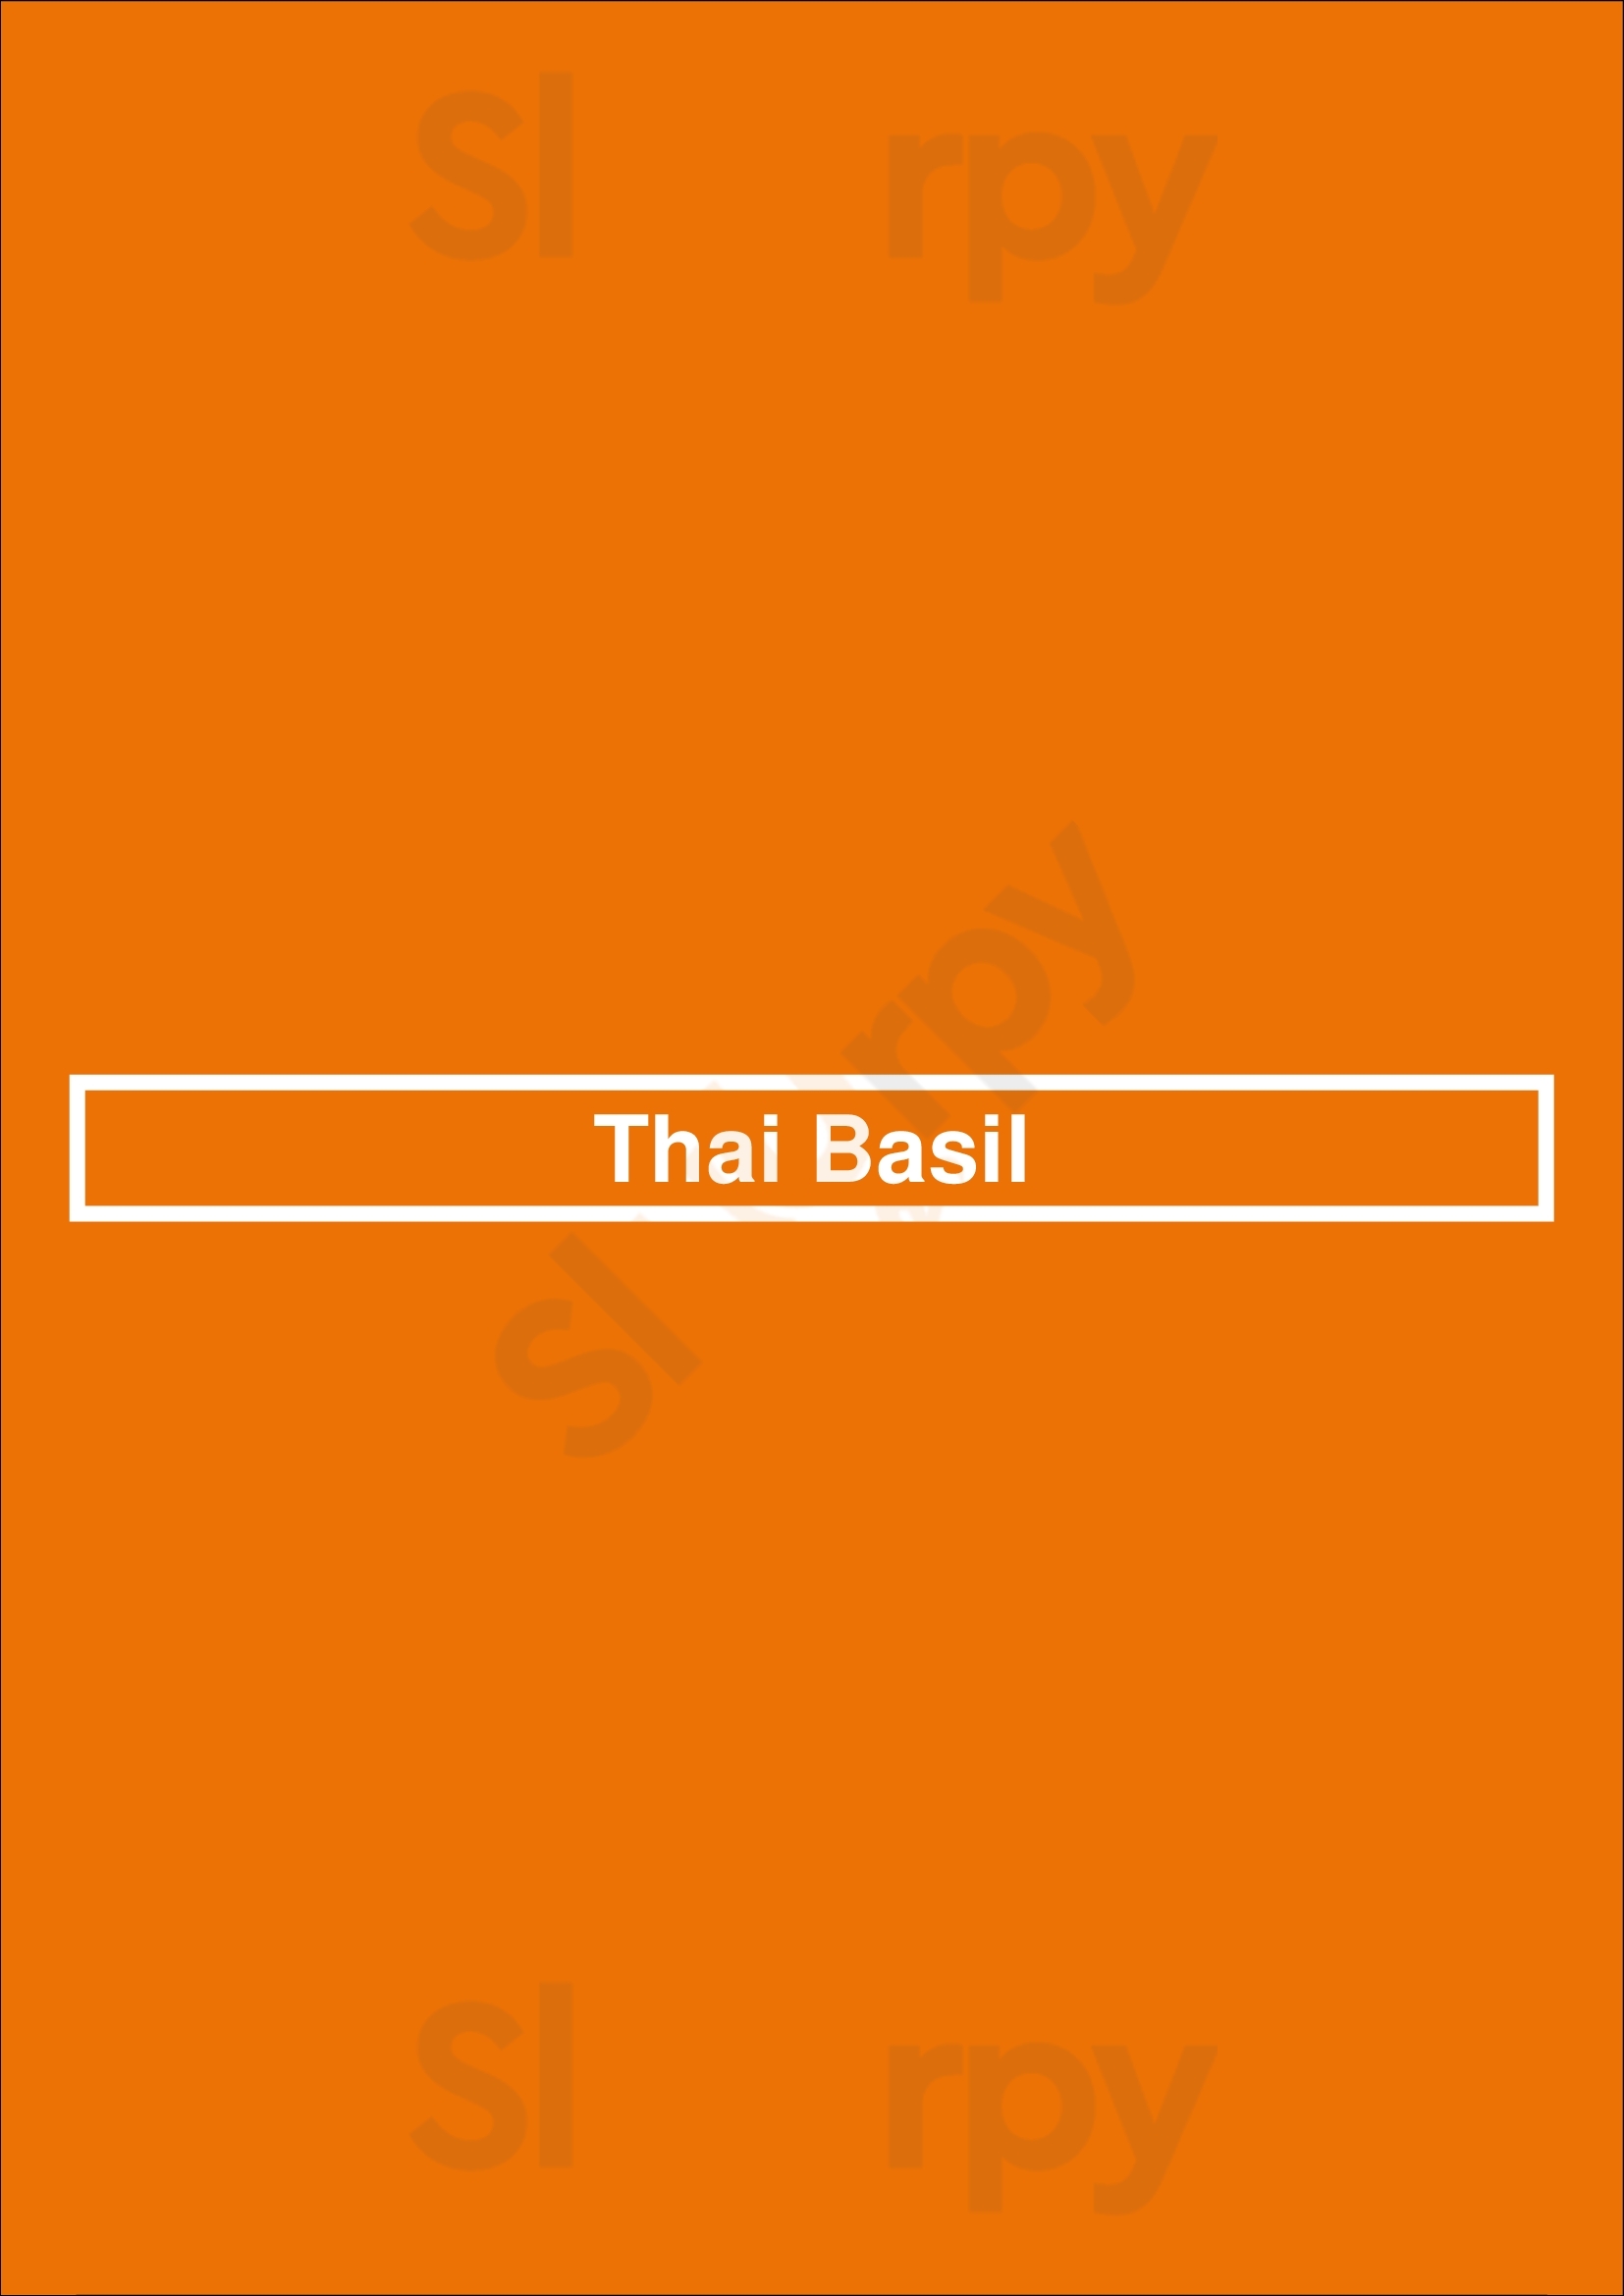 Thai Basil Vancouver Menu - 1